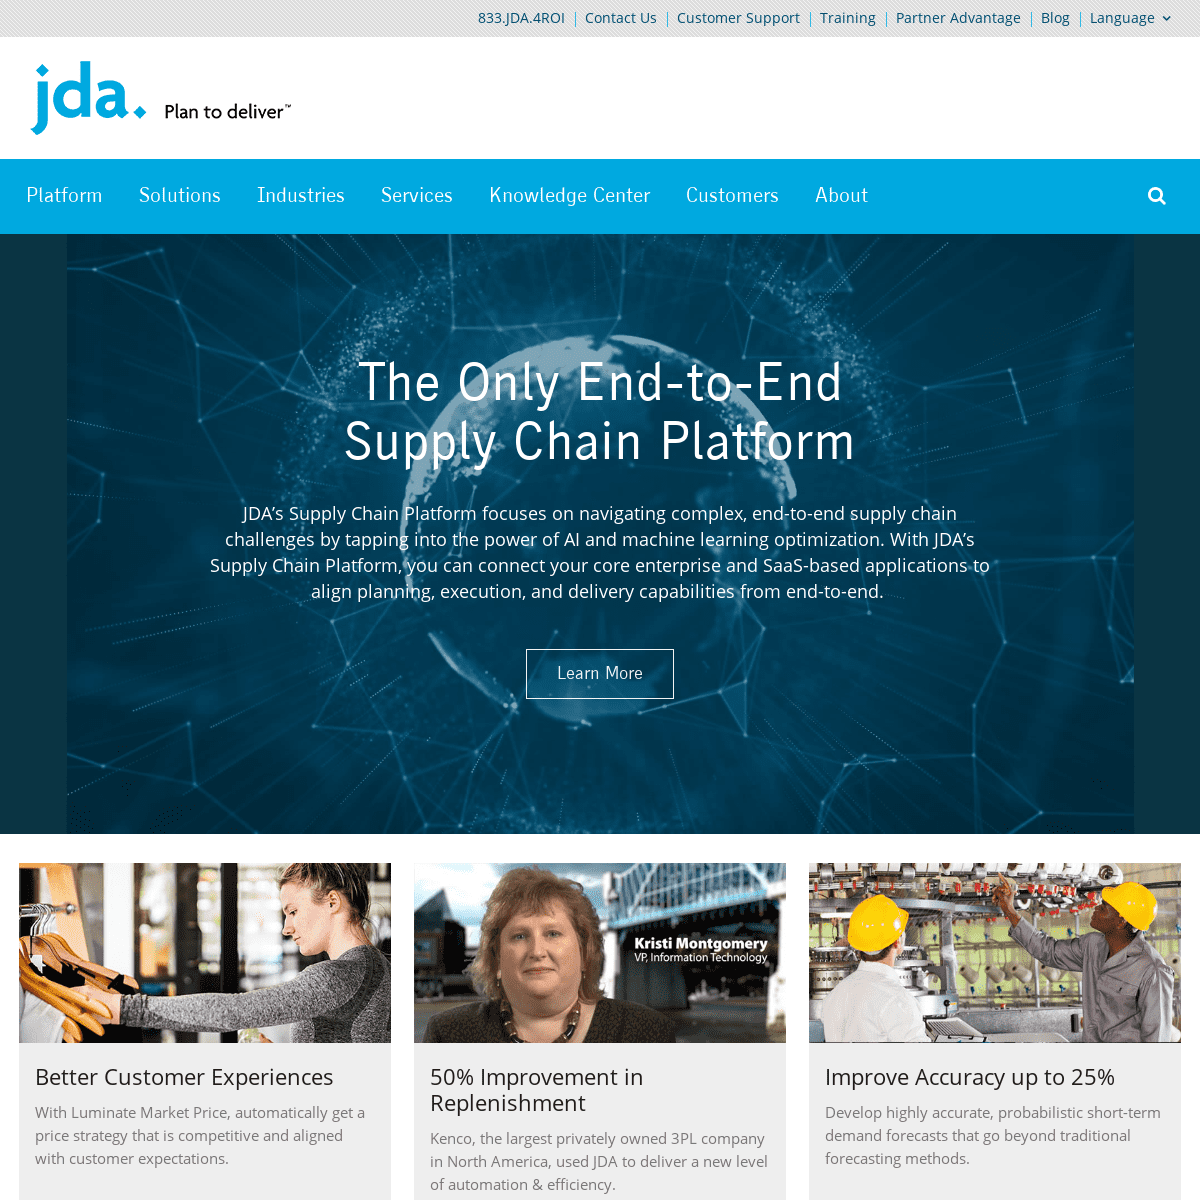 A complete backup of jda.com